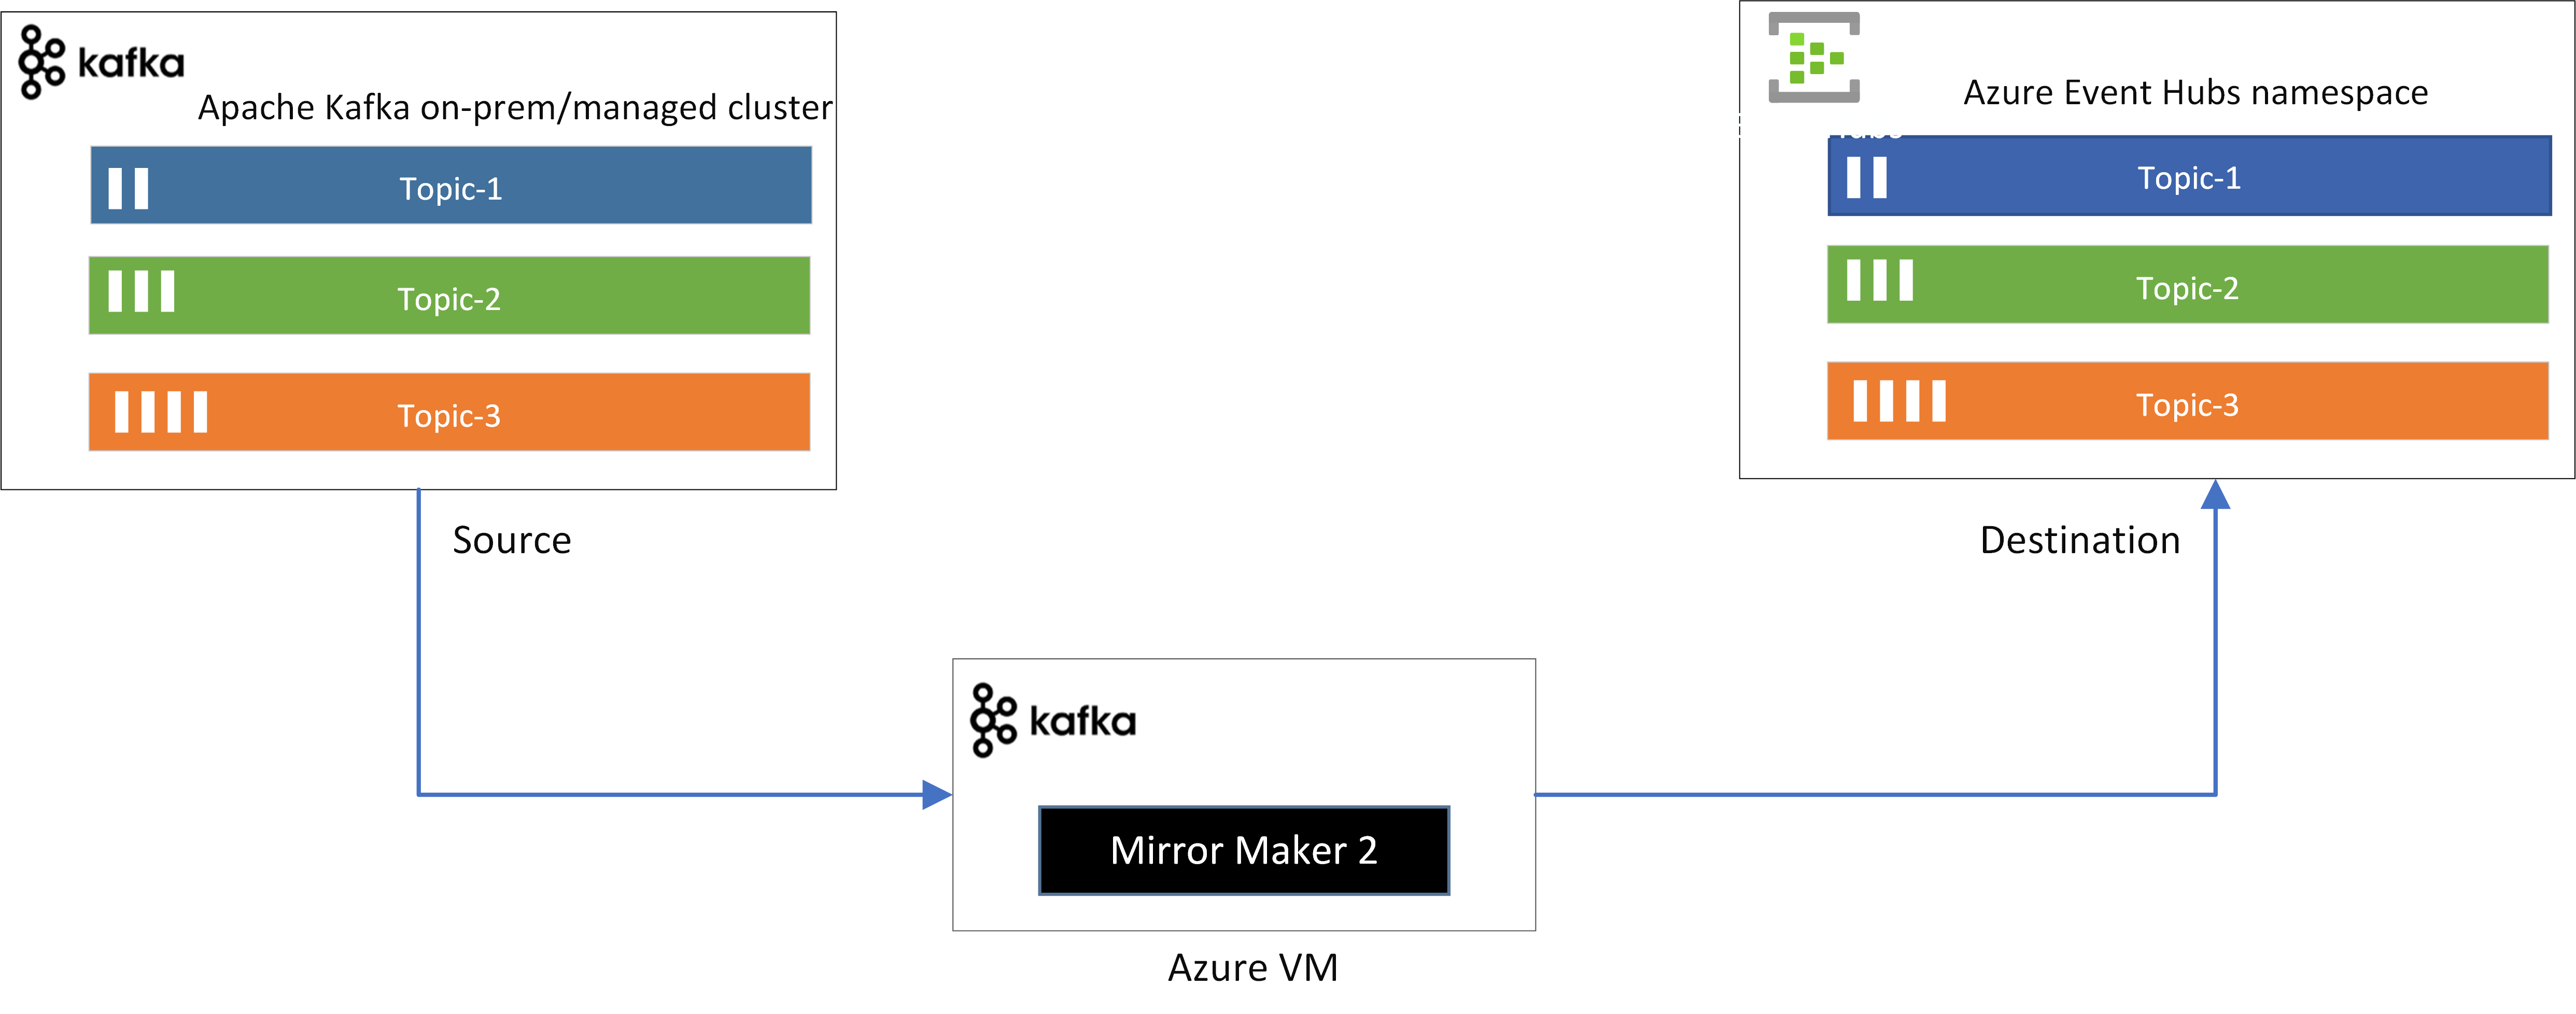 Kafka MirrorMaker から Event Hubs へのデータのフローを示す画像。